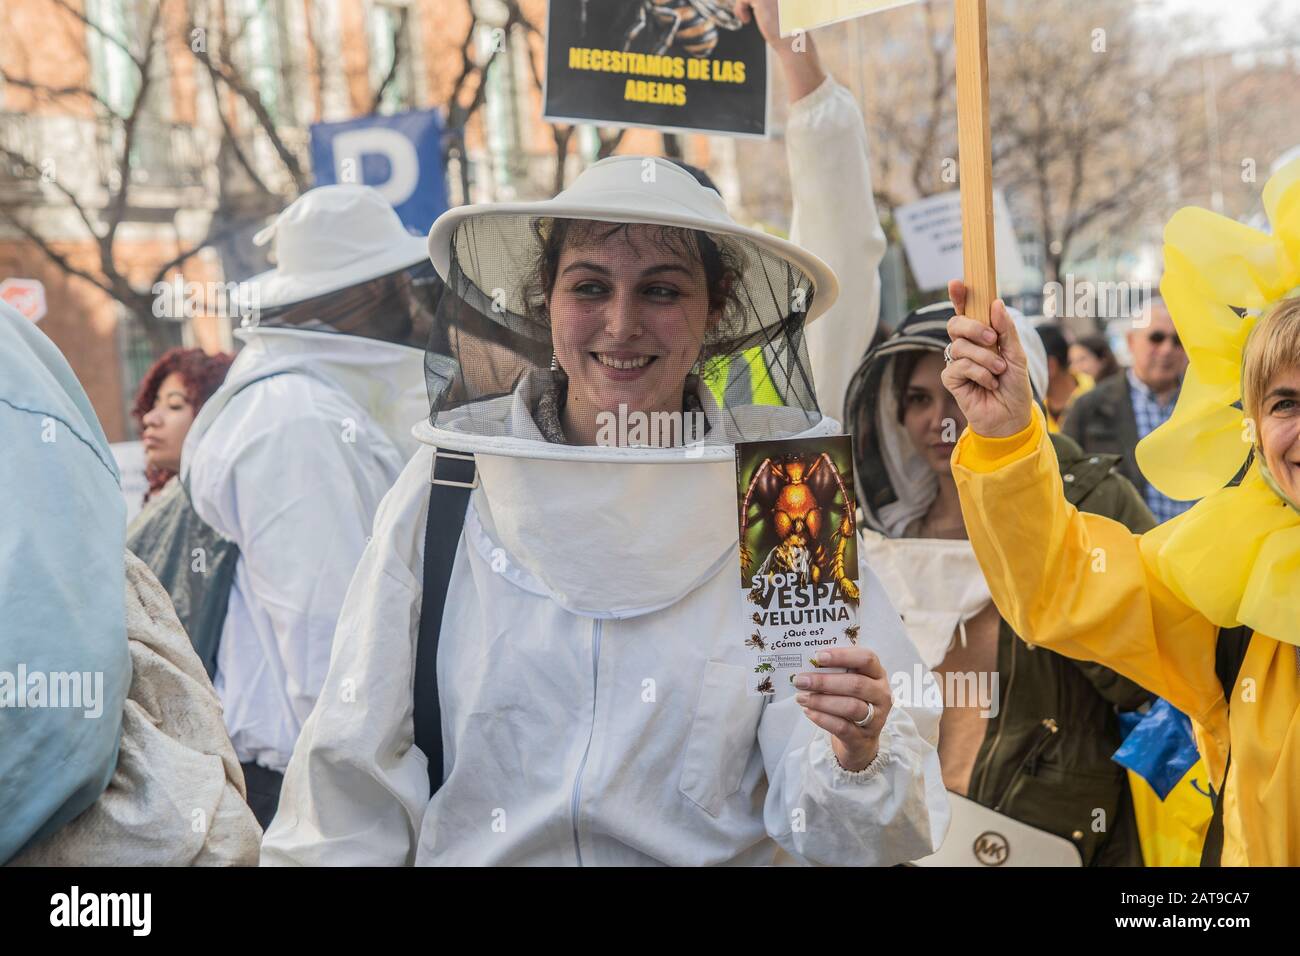 Hunderte von Menschen in Madrid nehmen an einer Demonstration Teil, die sich für das Überleben der Bienen in Spanien einsetzt. Am 31. Januar gefilmt, werden Aktivisten mit Bienen gesehen Stockfoto